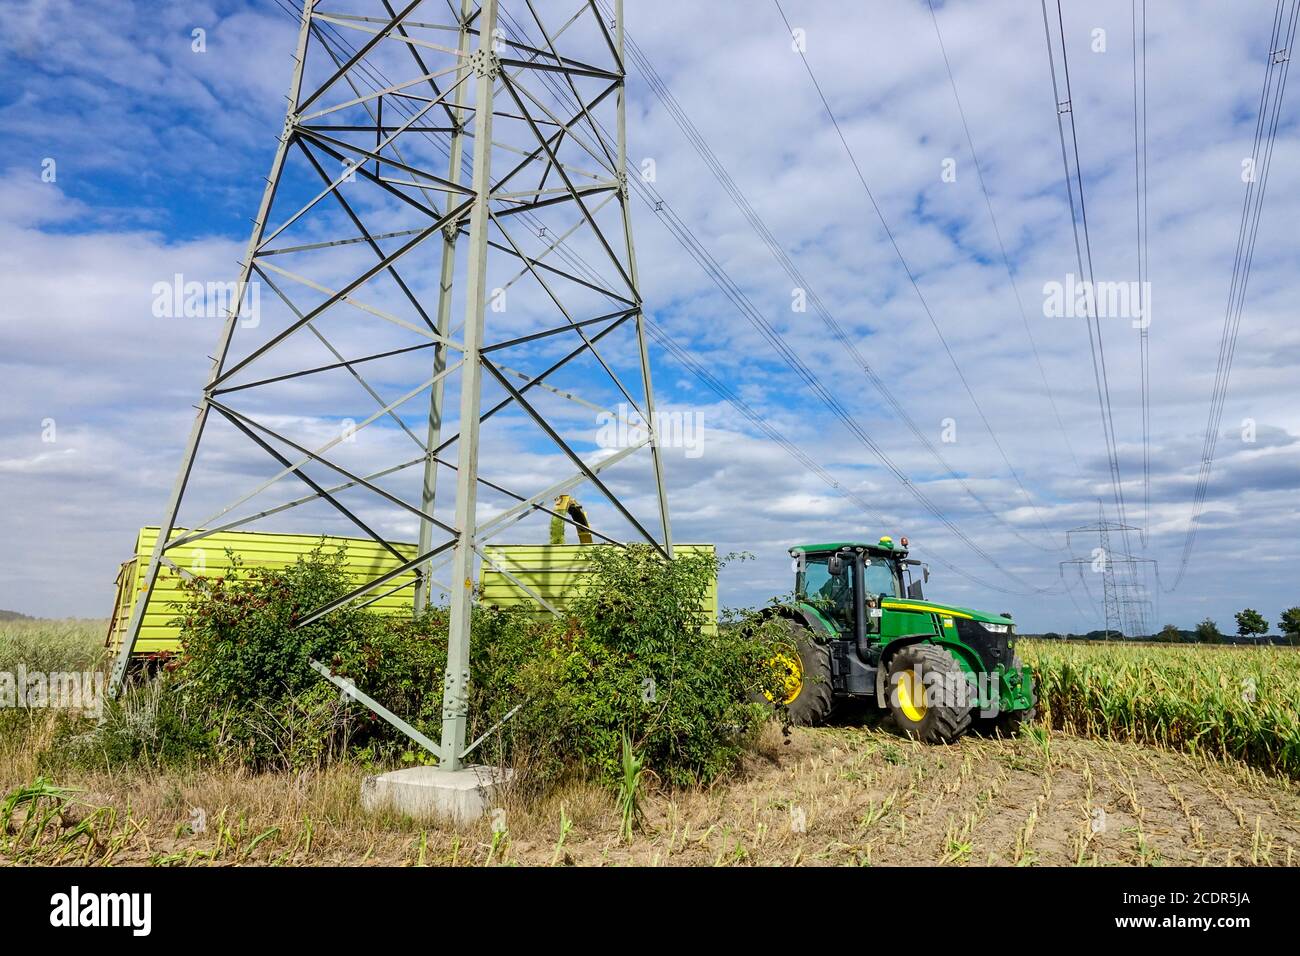 Landwirtschaft Landwirtschaft Ernte Mais unter Hochspannungsleitungen und Pylonen John Der Traktor von Deere umfährt einen Mast Stockfoto